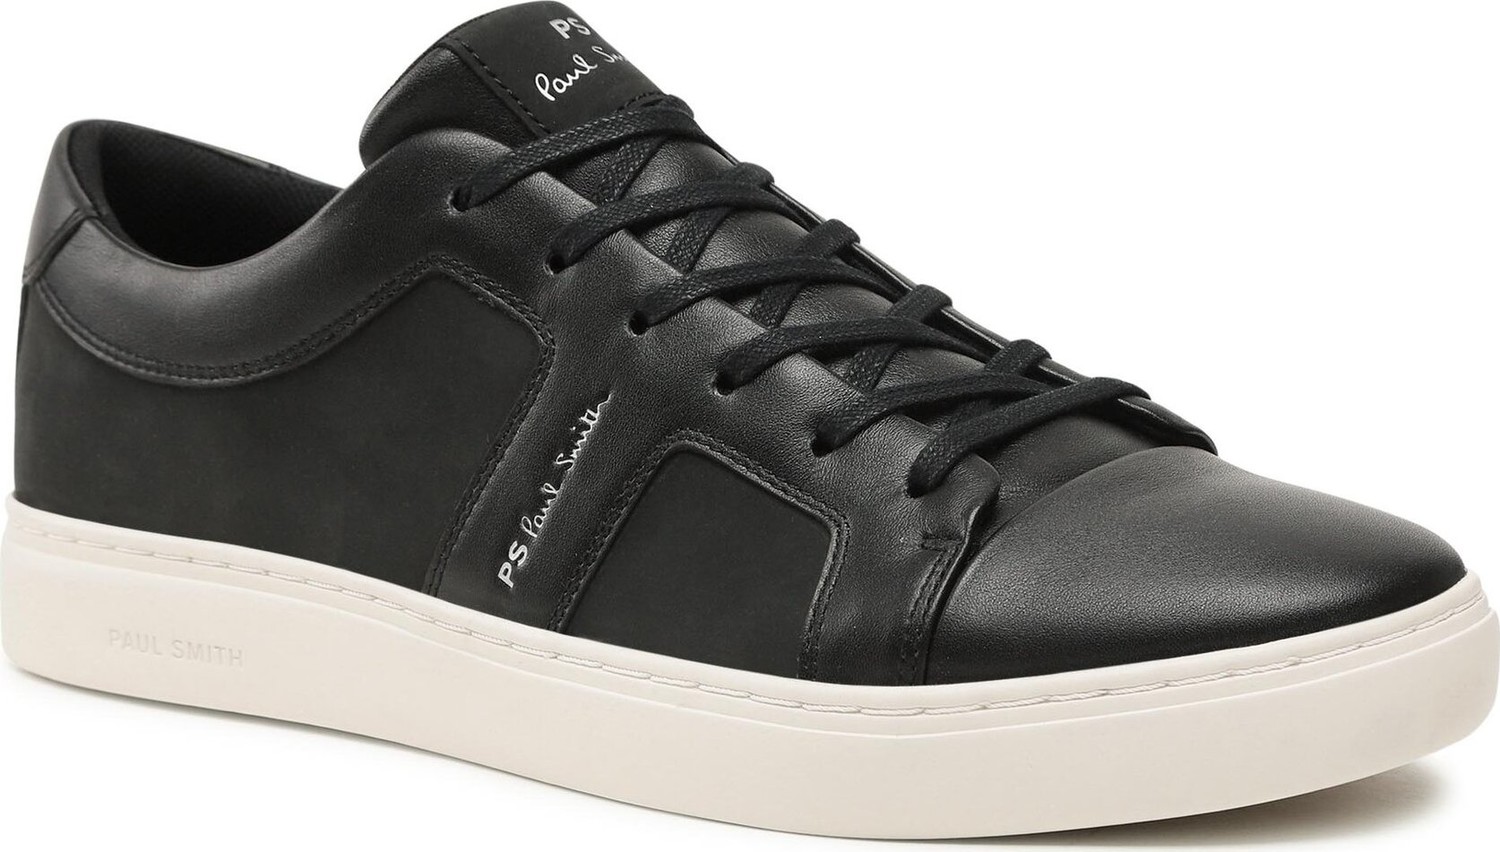 Sneakersy Paul Smith Vanda M2S-VDA01-KNUB Black 79